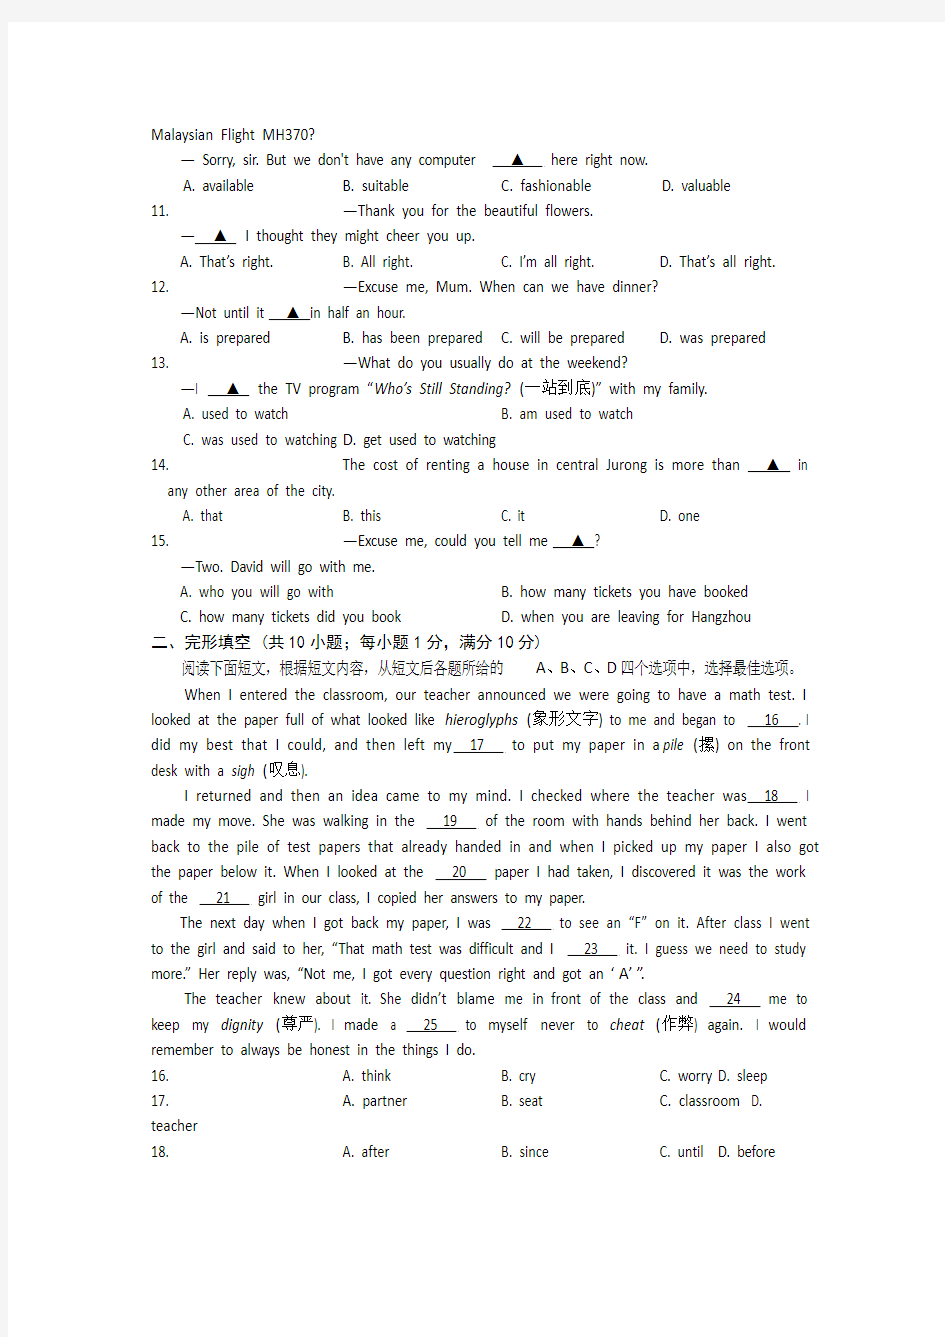 江苏省春城中学2014年中考英语模拟试卷